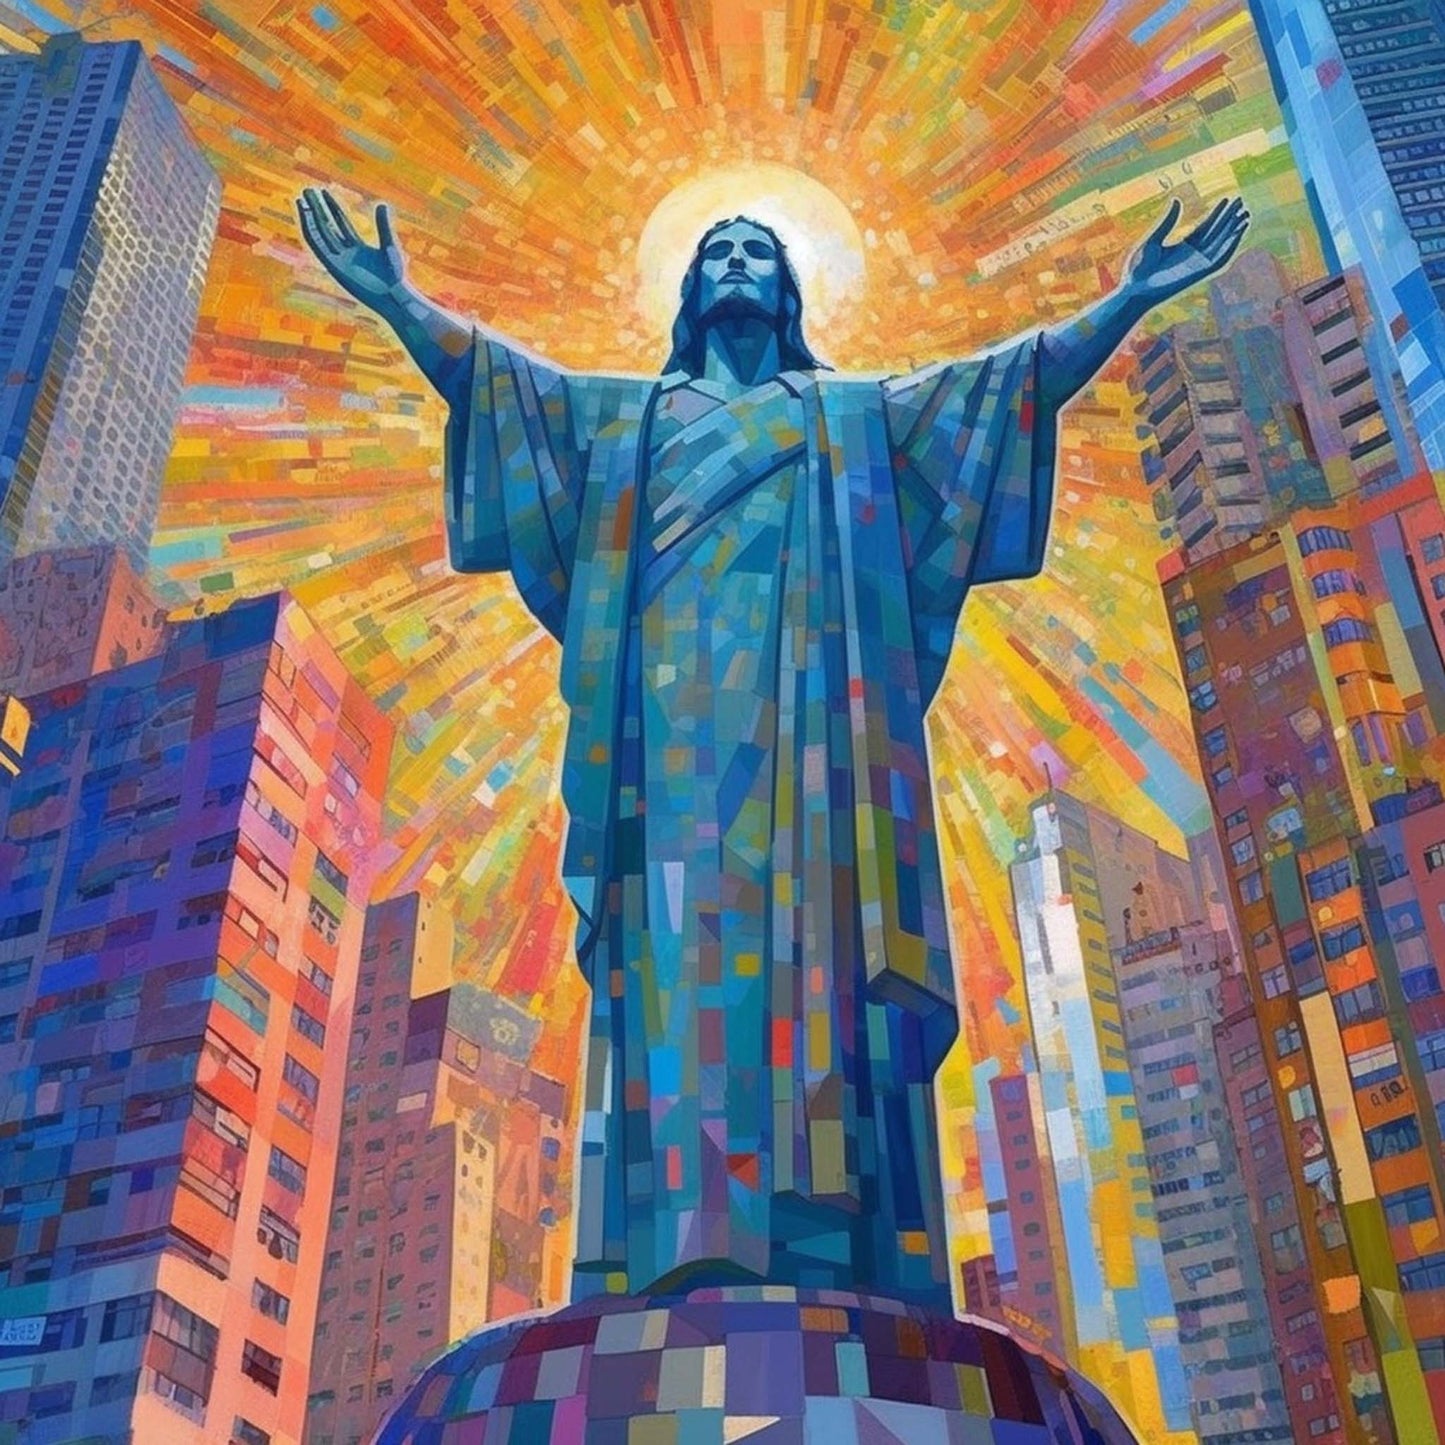 Urbanisto - Rio de Janeiro Christus Statue - Wandbild in der Stilrichtung des Futurismus